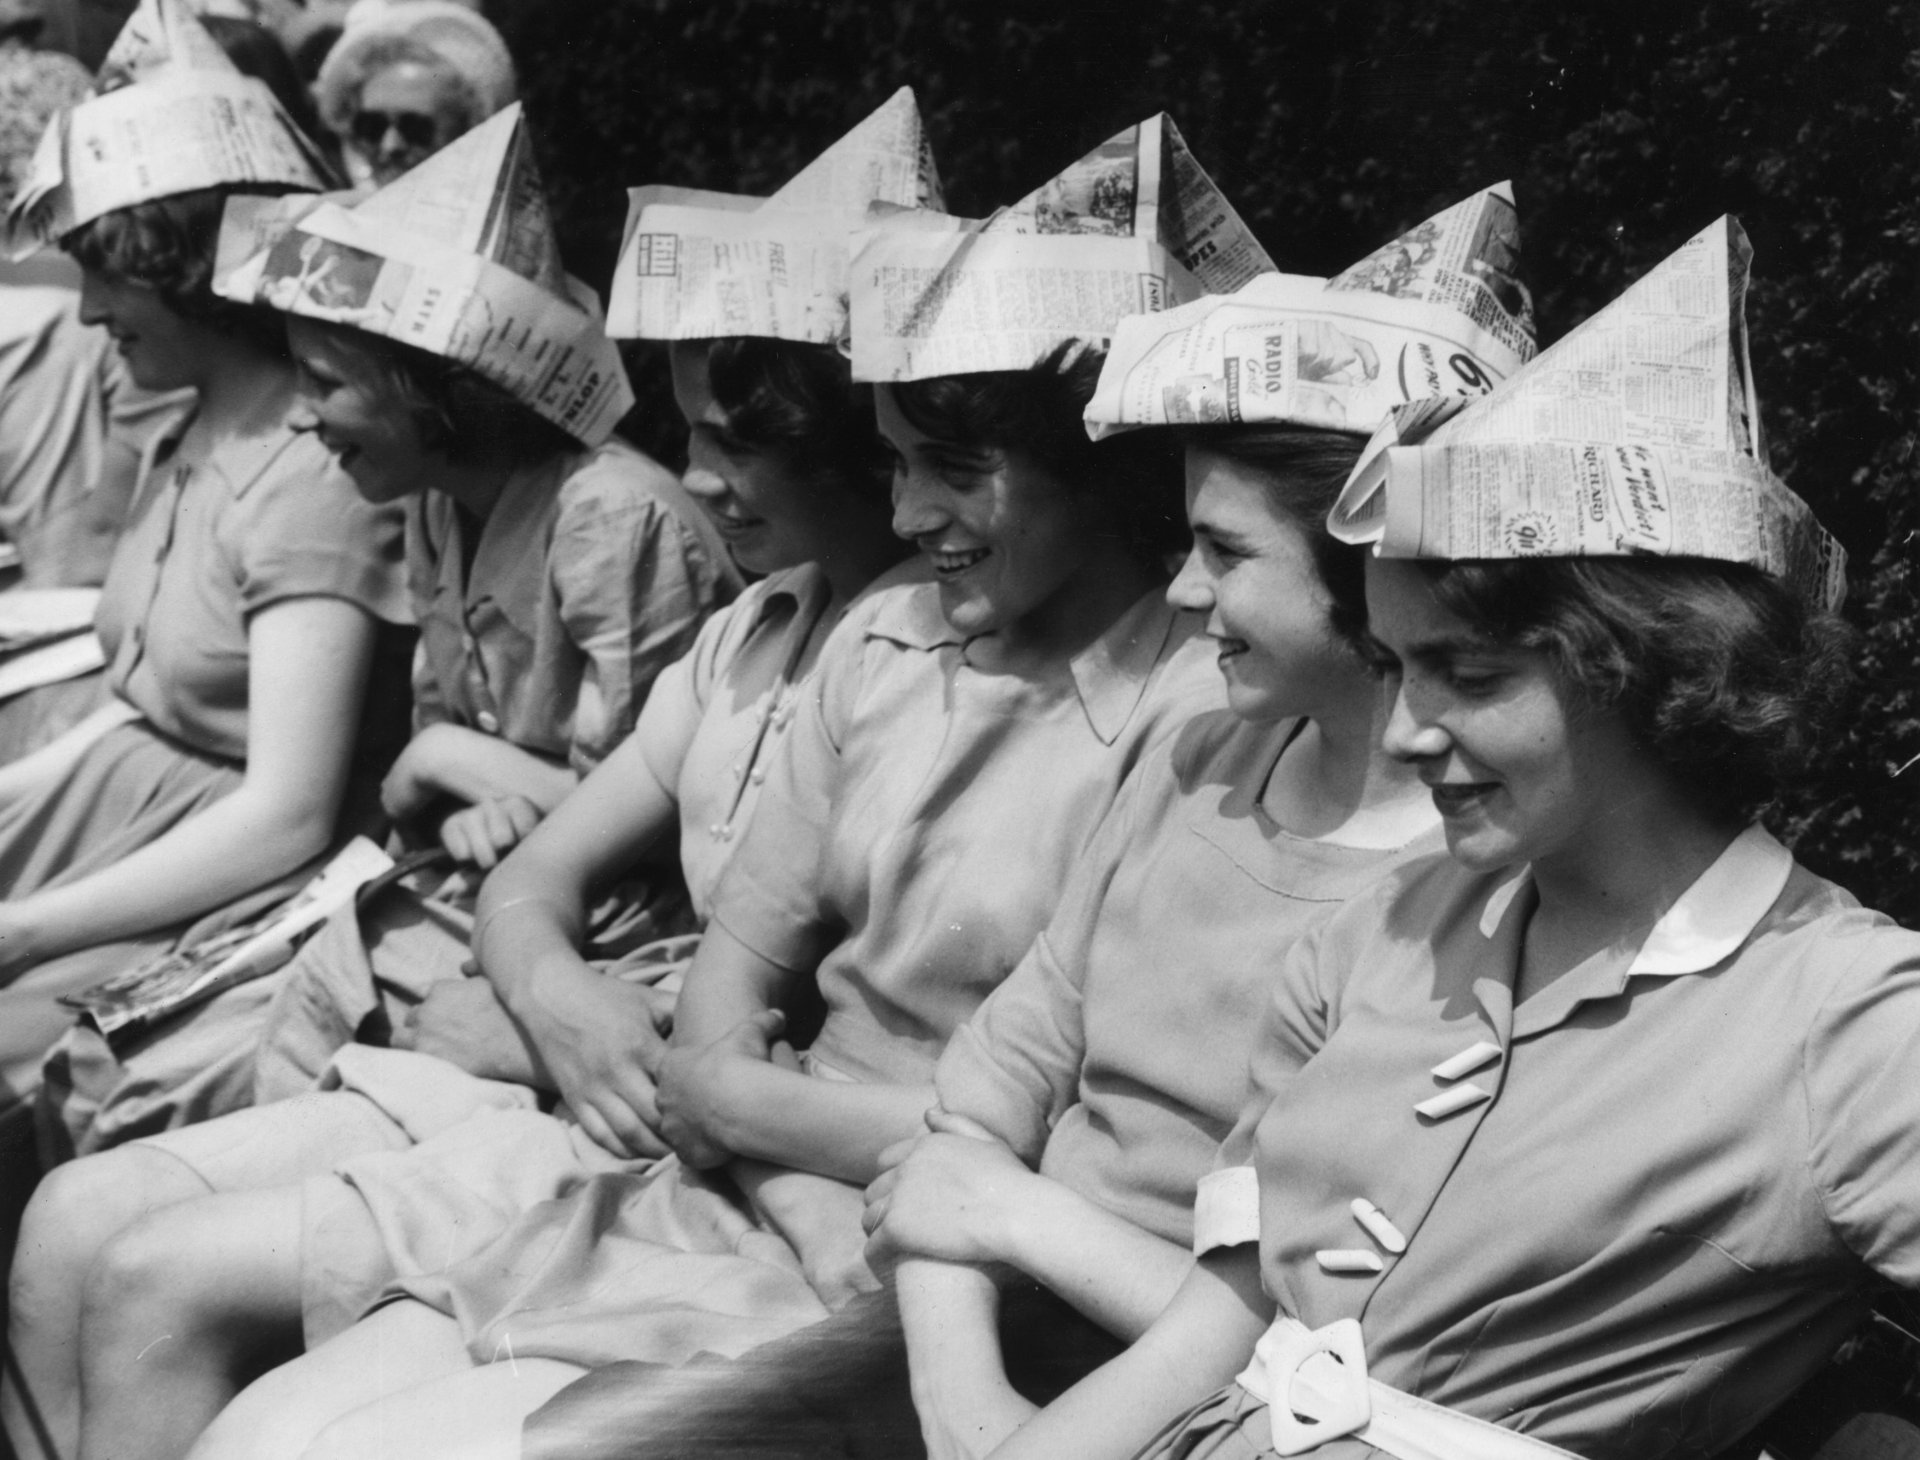 25 юни 1953 г.: Ученички от Gravesend Grammar School с шапки от вестници, за да се предпазят от слънцето, докато гледат Уимбълдън по време на гореща вълна. (Снимка от Уилям Вандерсън/Fox Photos/Getty Images)